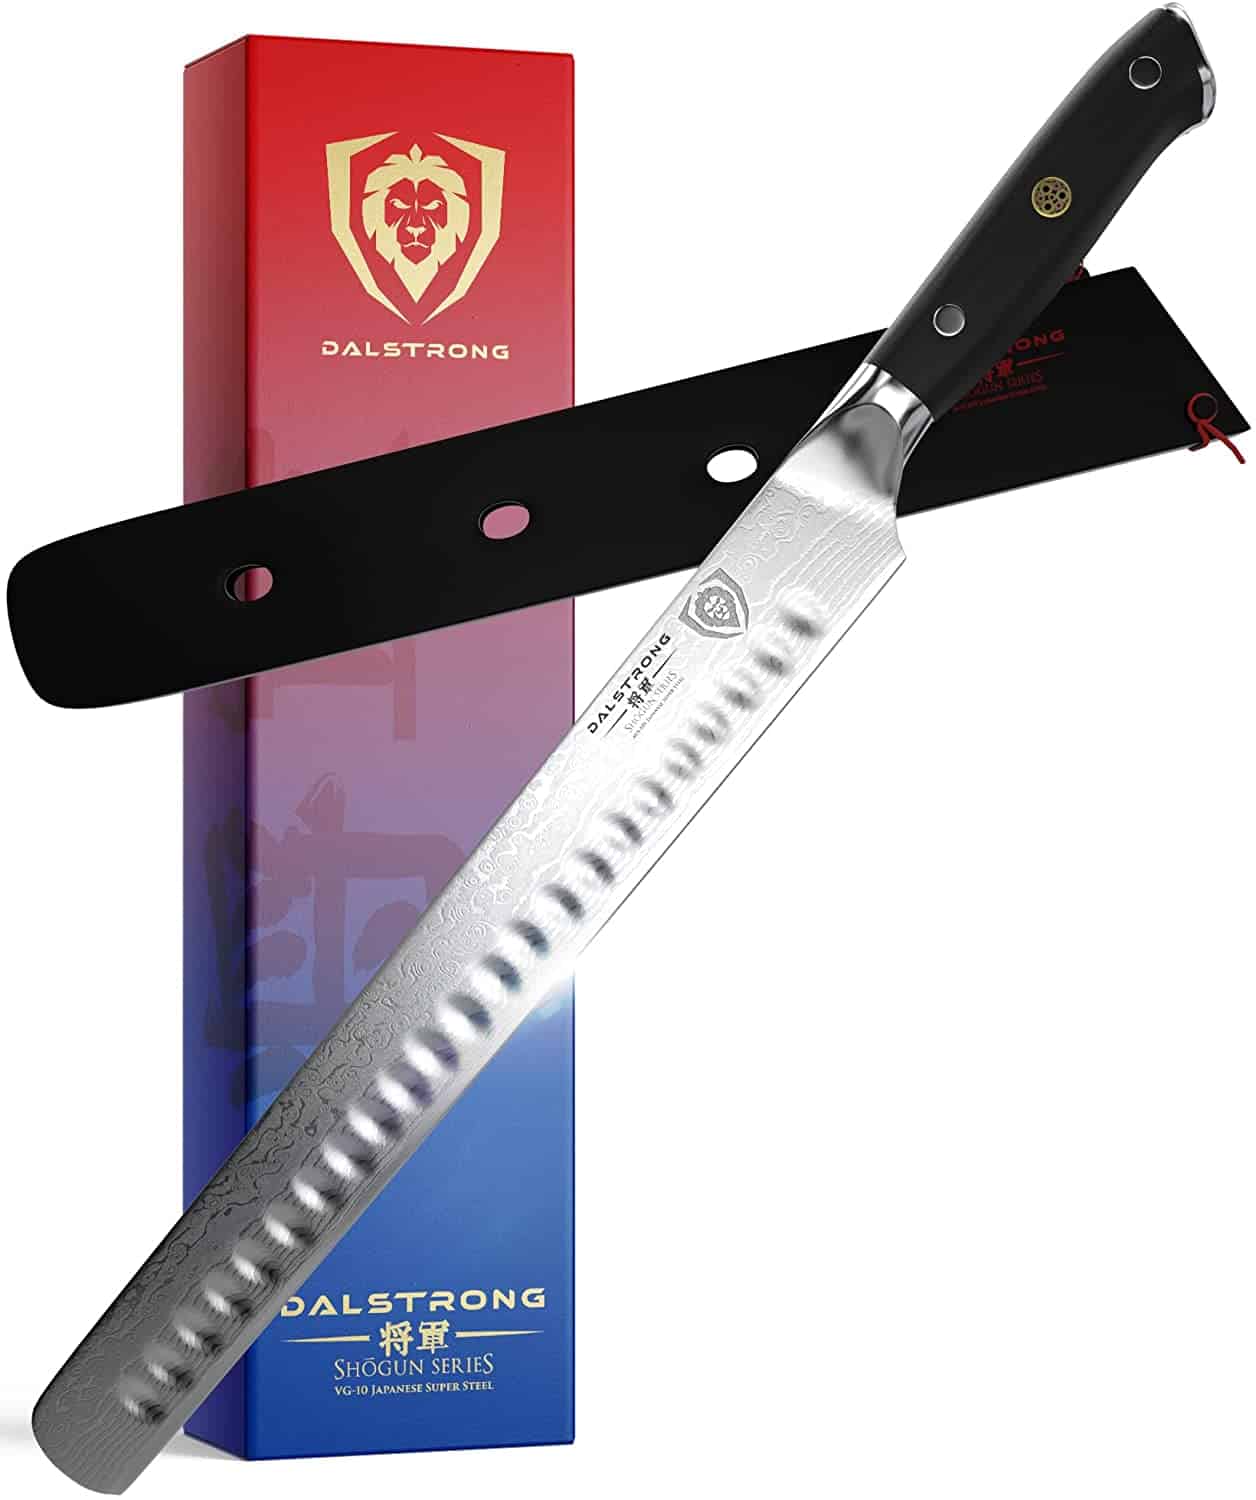 Best slicer & carving knife: DALSTRONG Slicing Carving Knife 12" 